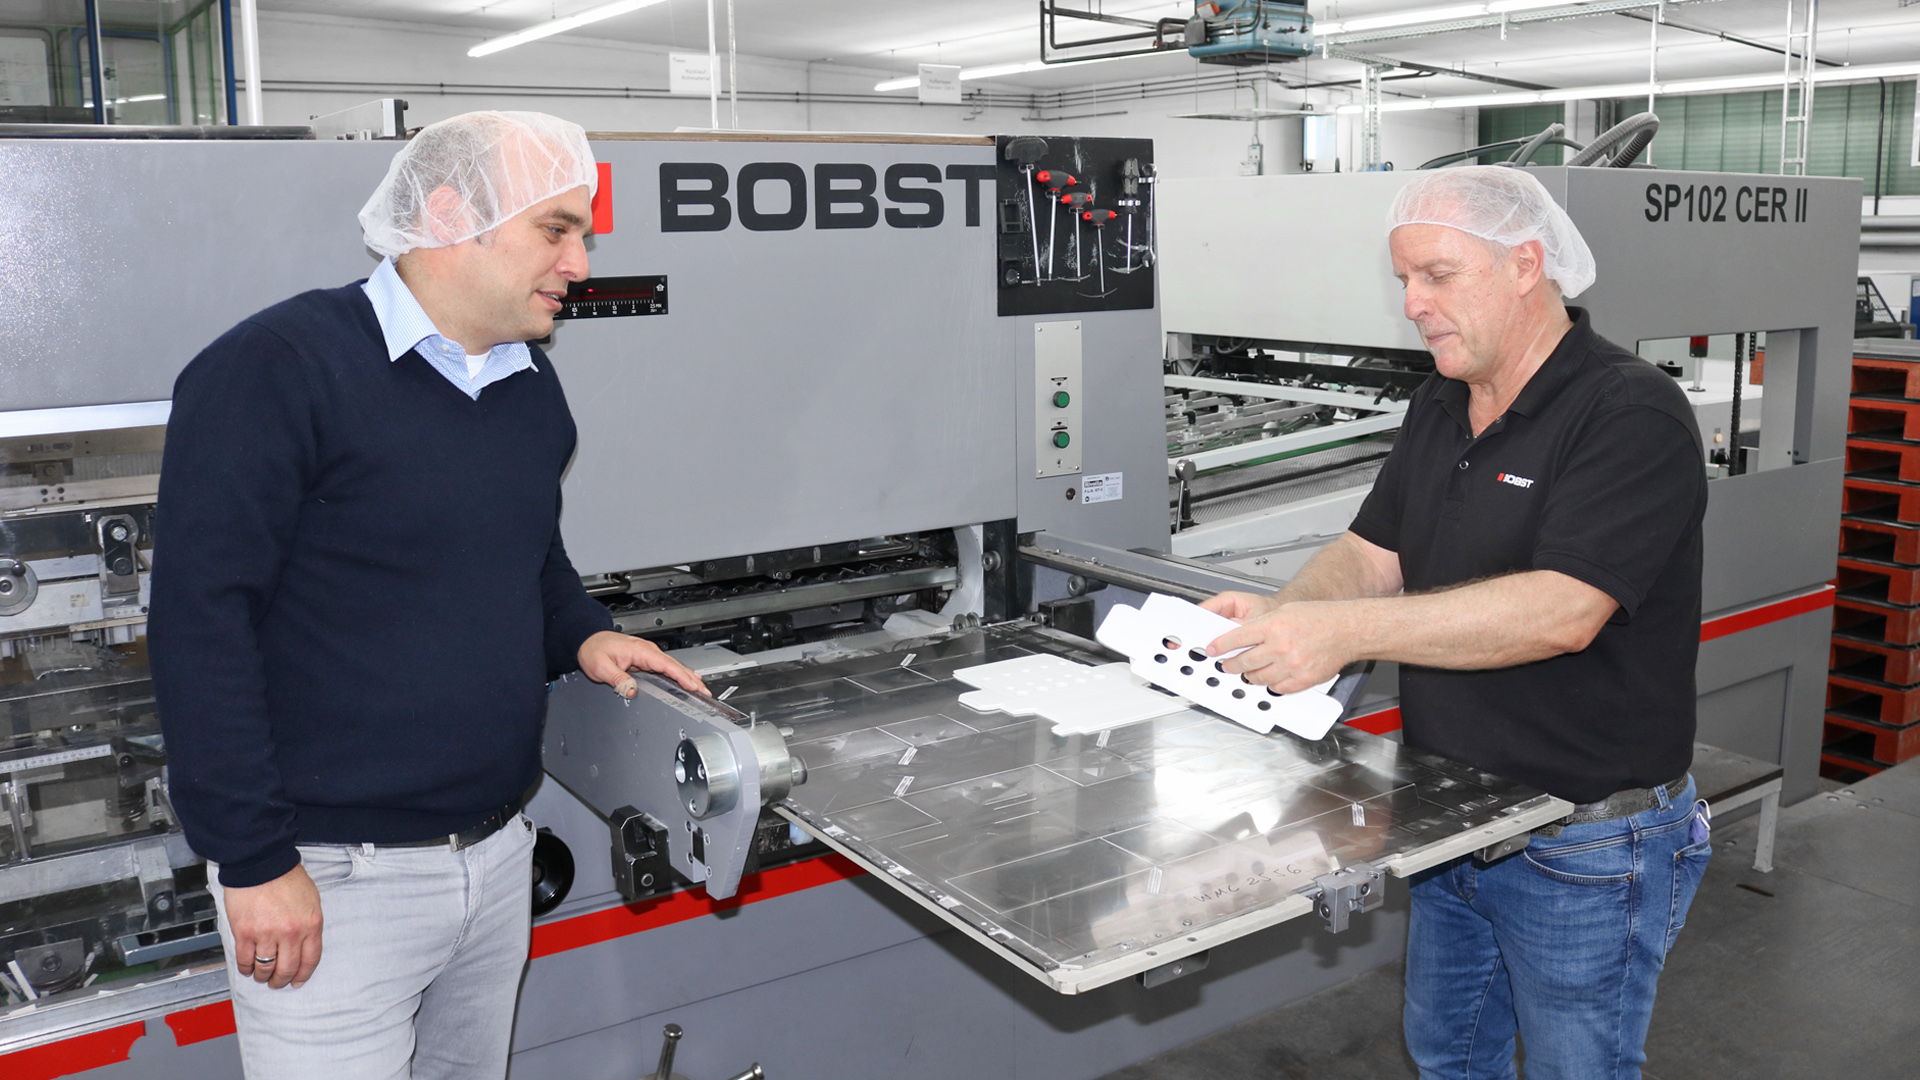 Michael Spiegel, Directeur Général (à gauche) et Manfred Wöhning de Bobst Meerbusch à côté de la presse à découper BOBST SP102 CER II.